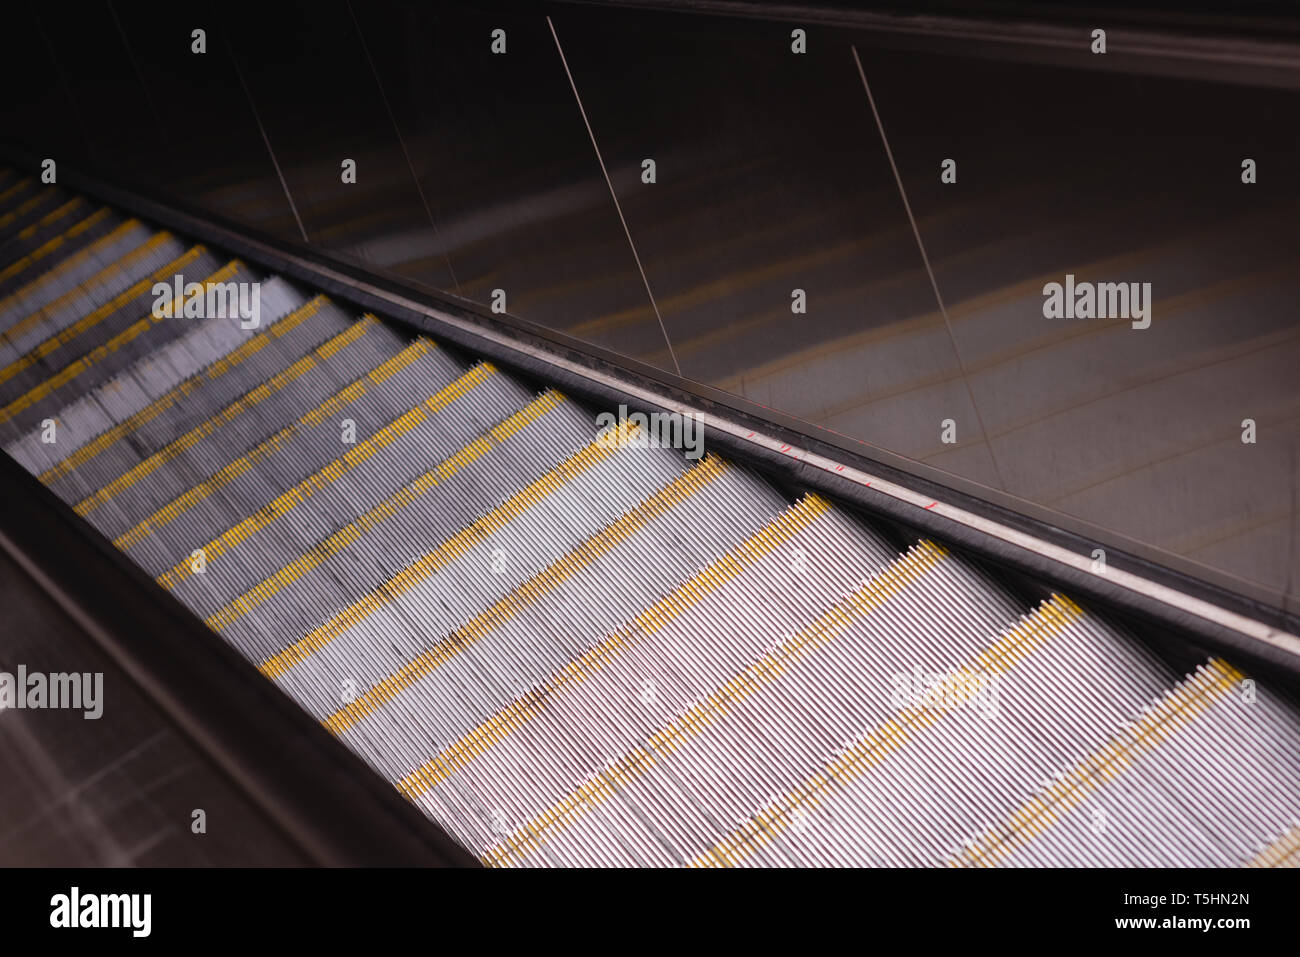 View of empty escalators Stock Photo